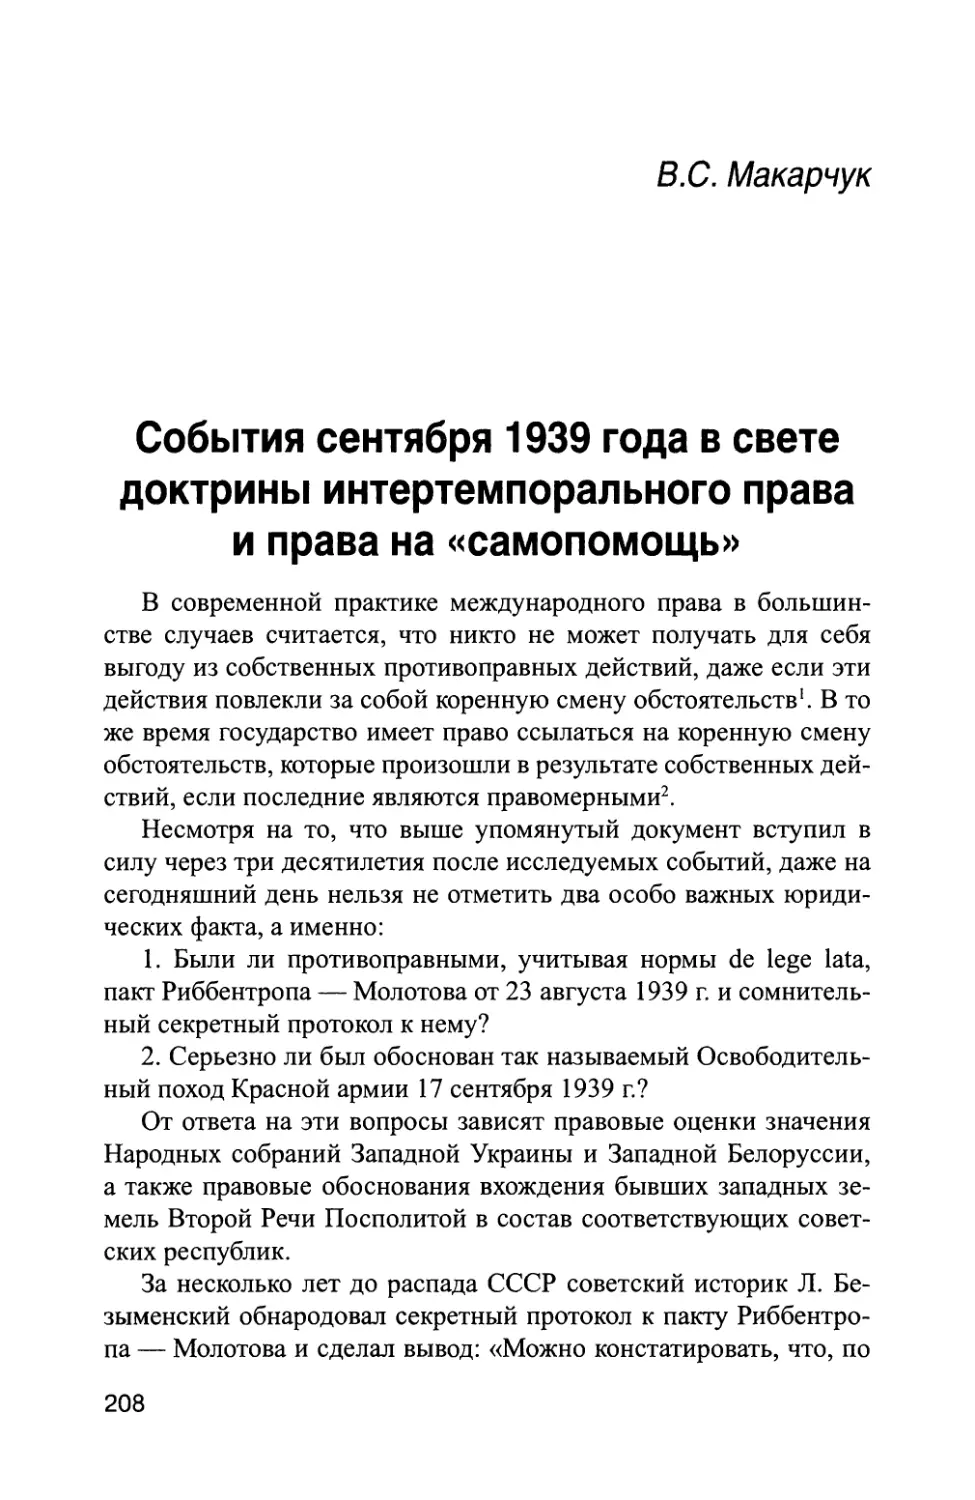 В. С Макарчук. События сентября 1939 года в свете доктрины интертемпорального права и права на «самопомощь»